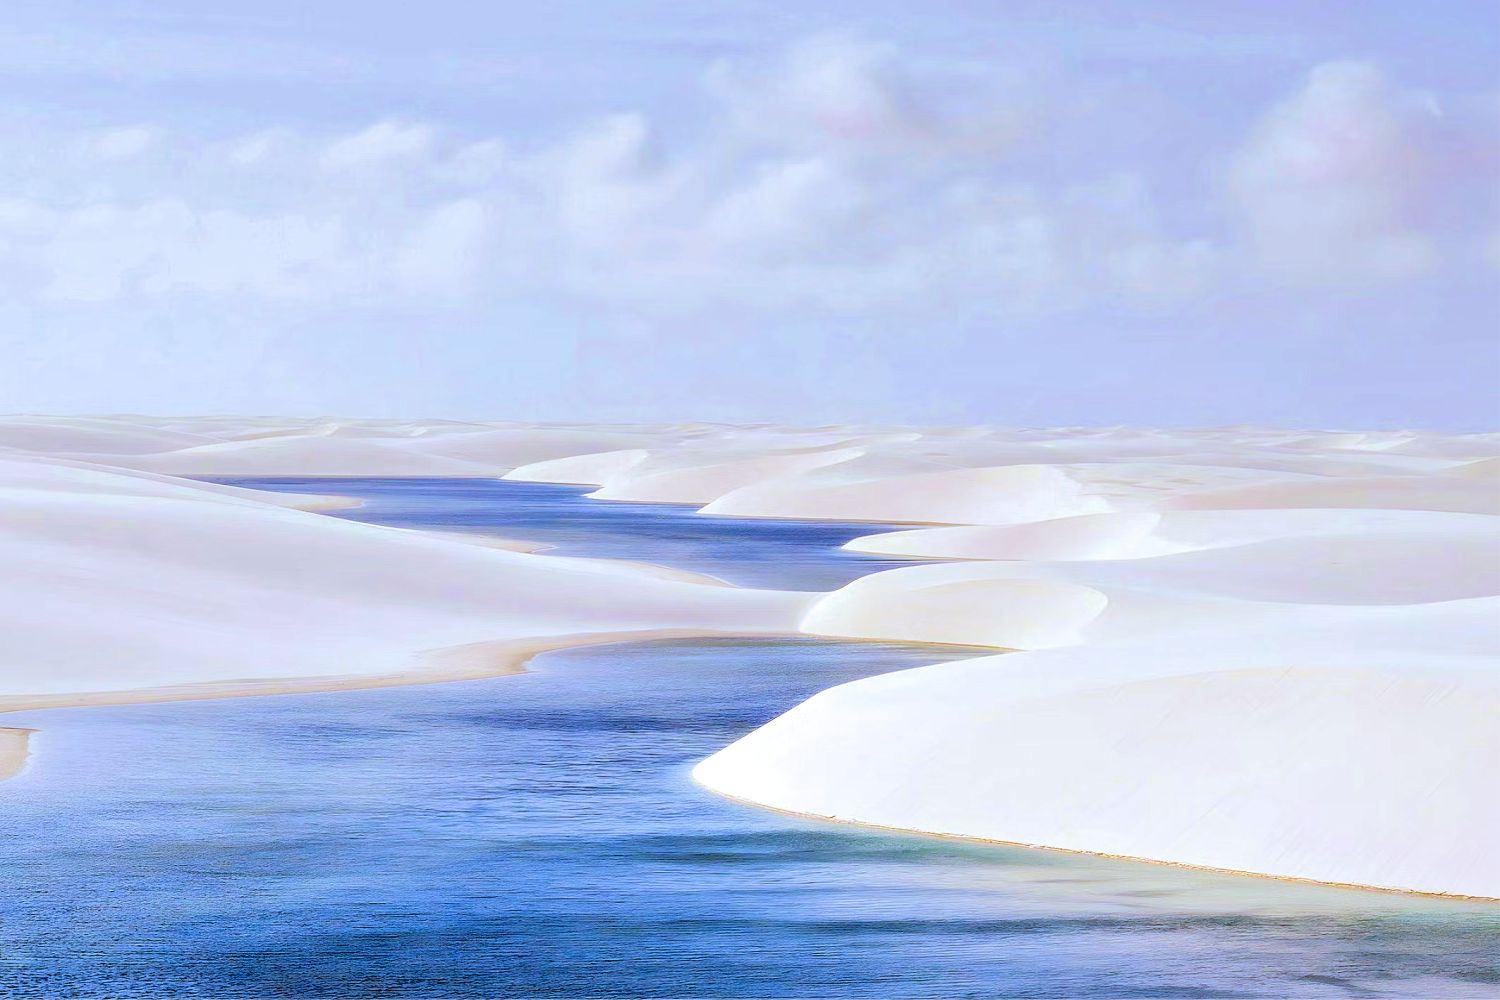 Lencois Maranhenses - khám phá vẻ mê hoặc của hàng trăm hồ nước xanh ngọc giữa sa mạc - Ảnh 9.